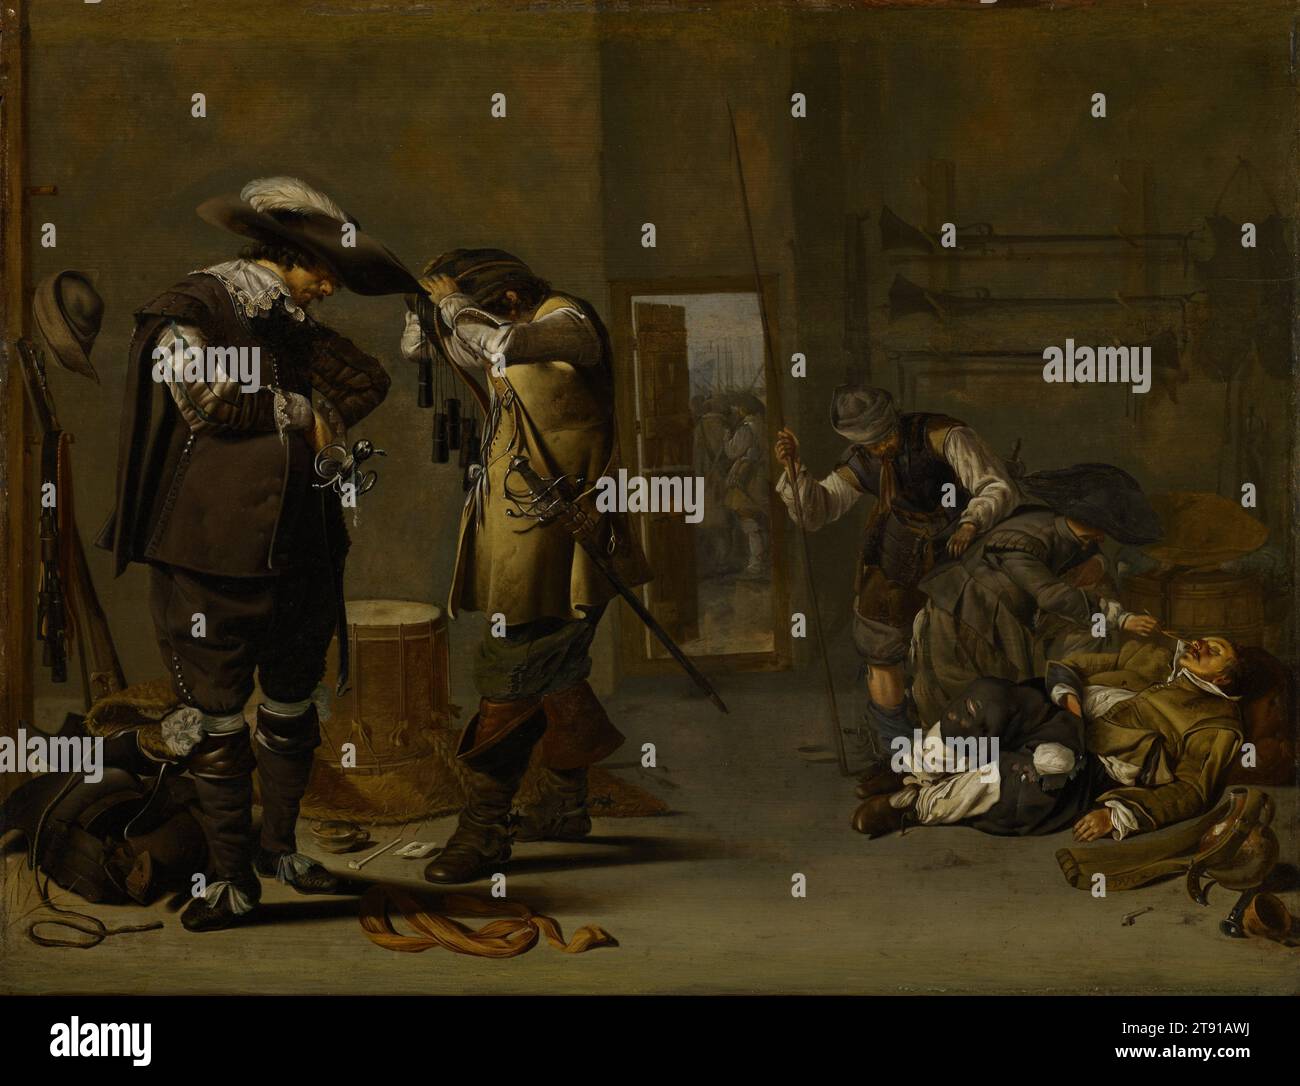 Soldaten, die sich bewaffnen, Mitte der 1630er Jahre, Jacob Duck, Holländer, um 1600–1667, 17 x 3/8 Zoll (43,18 x 56,83 cm) (Platte)28 x 33 3/8 Zoll (71,12 x 84,7 cm) (Außenrahmen), Öl auf Platte, Niederlande, 17. Jahrhundert, links, zwei Soldaten, die im Dreißigjährigen Krieg gefangen waren, kleiden sich an, einer hebt einen Bandolier über seinen Kopf, während mehrere Zylinder hängen – Pulverladungen mit Schießpulver für seine Muskete. Rechts kitzelt ein Soldat die Nase eines anderen Kämpfers, der vermutlich ohnmächtig geworden ist, nachdem er die Flasche in der Nähe geleert hat. Der Kitzler weiß nicht, dass seine Tasche geklaut wird. Stockfoto